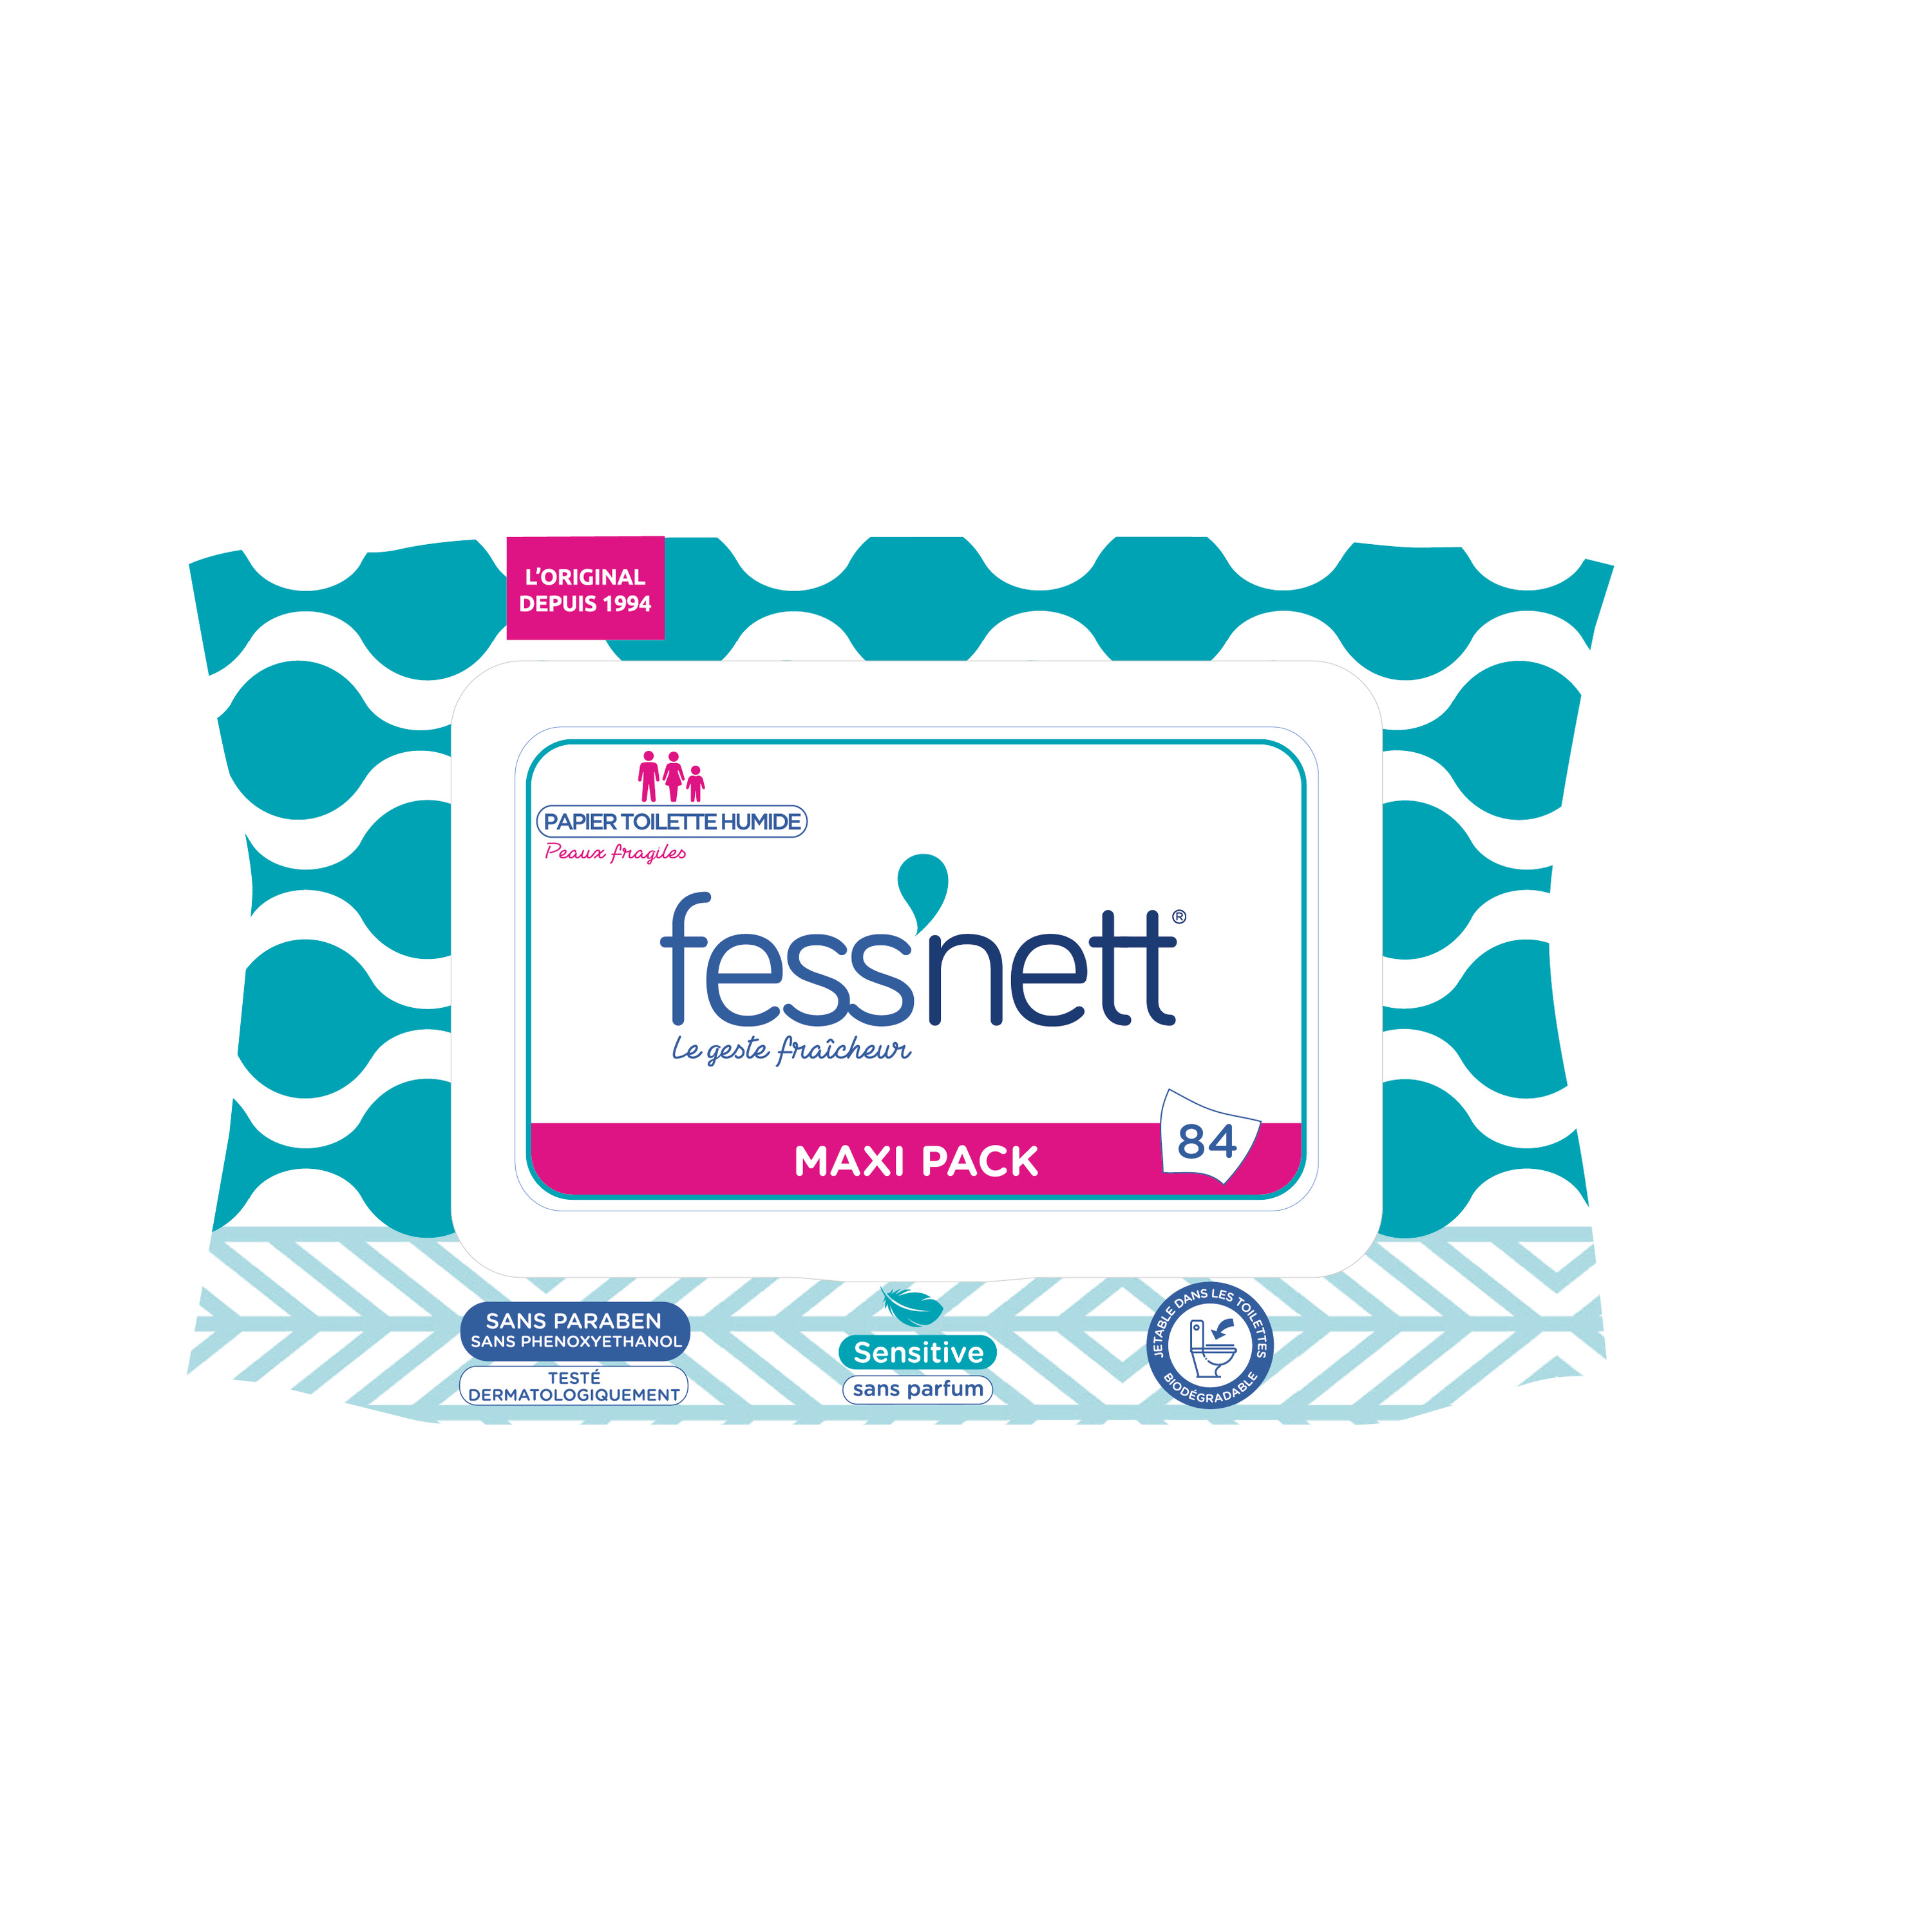 Fess'net Papier toilette humide - x50